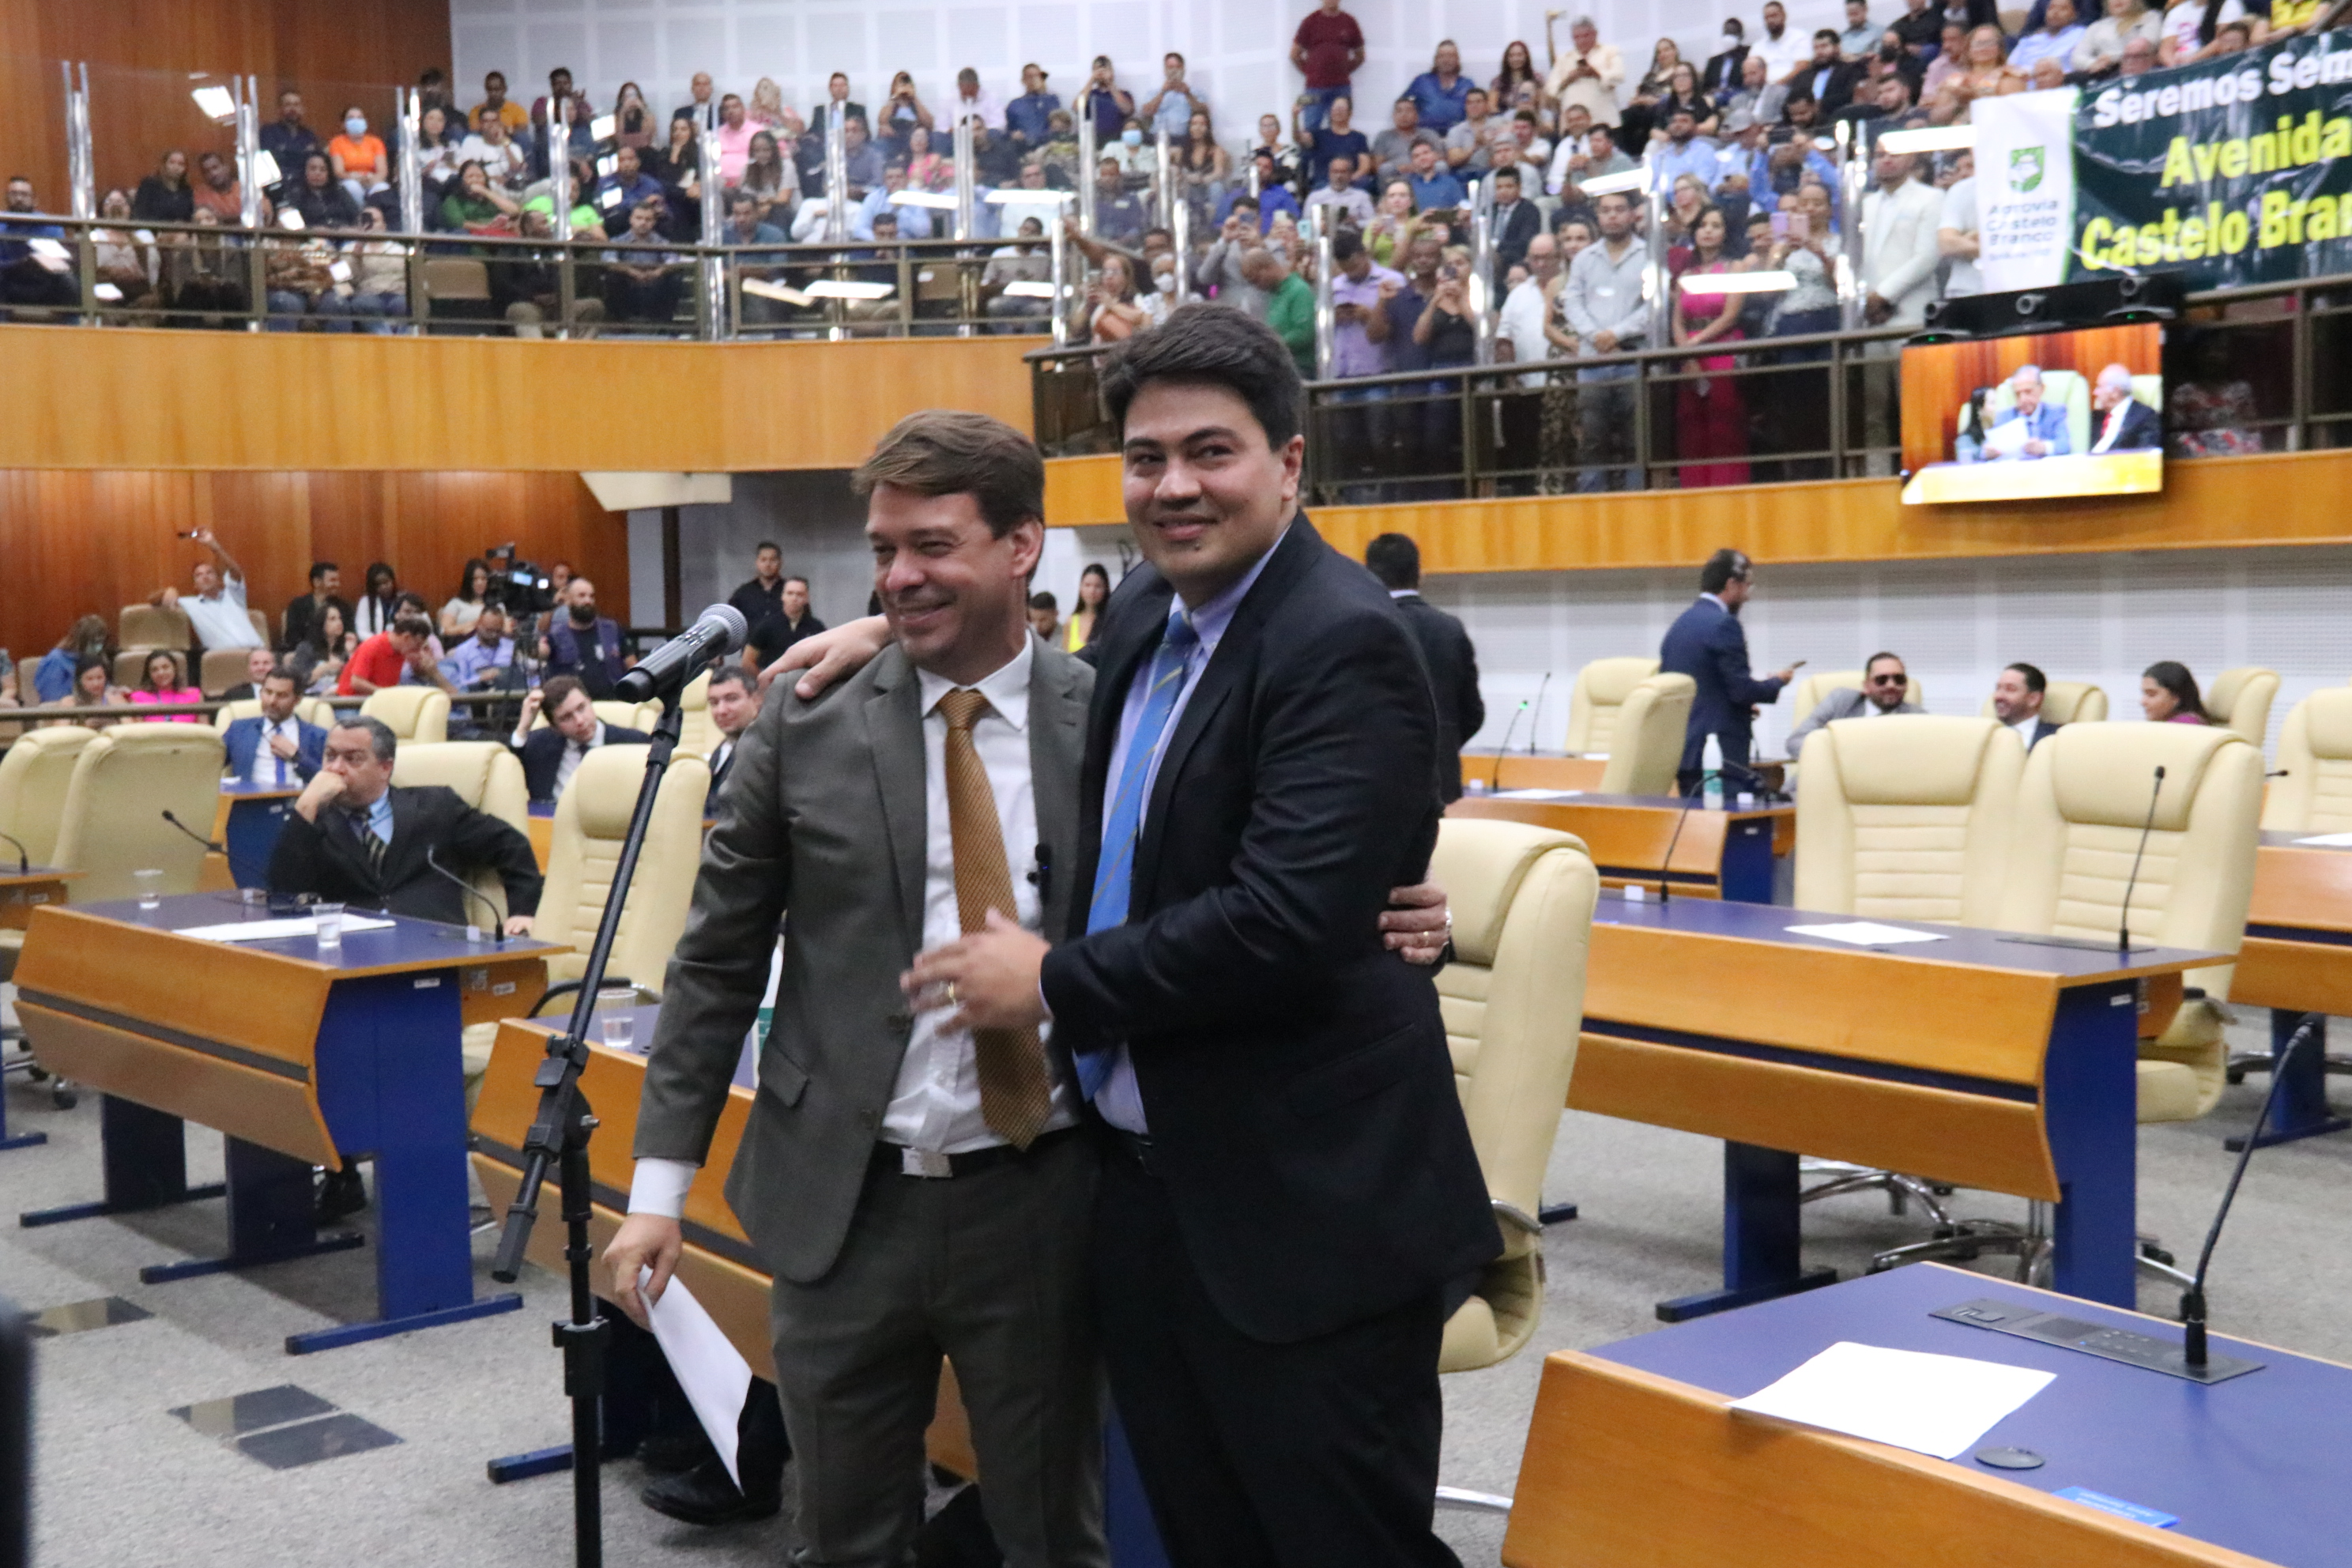 Vereadores apresentam pedido para criação de novo bloco parlamentar na Câmara